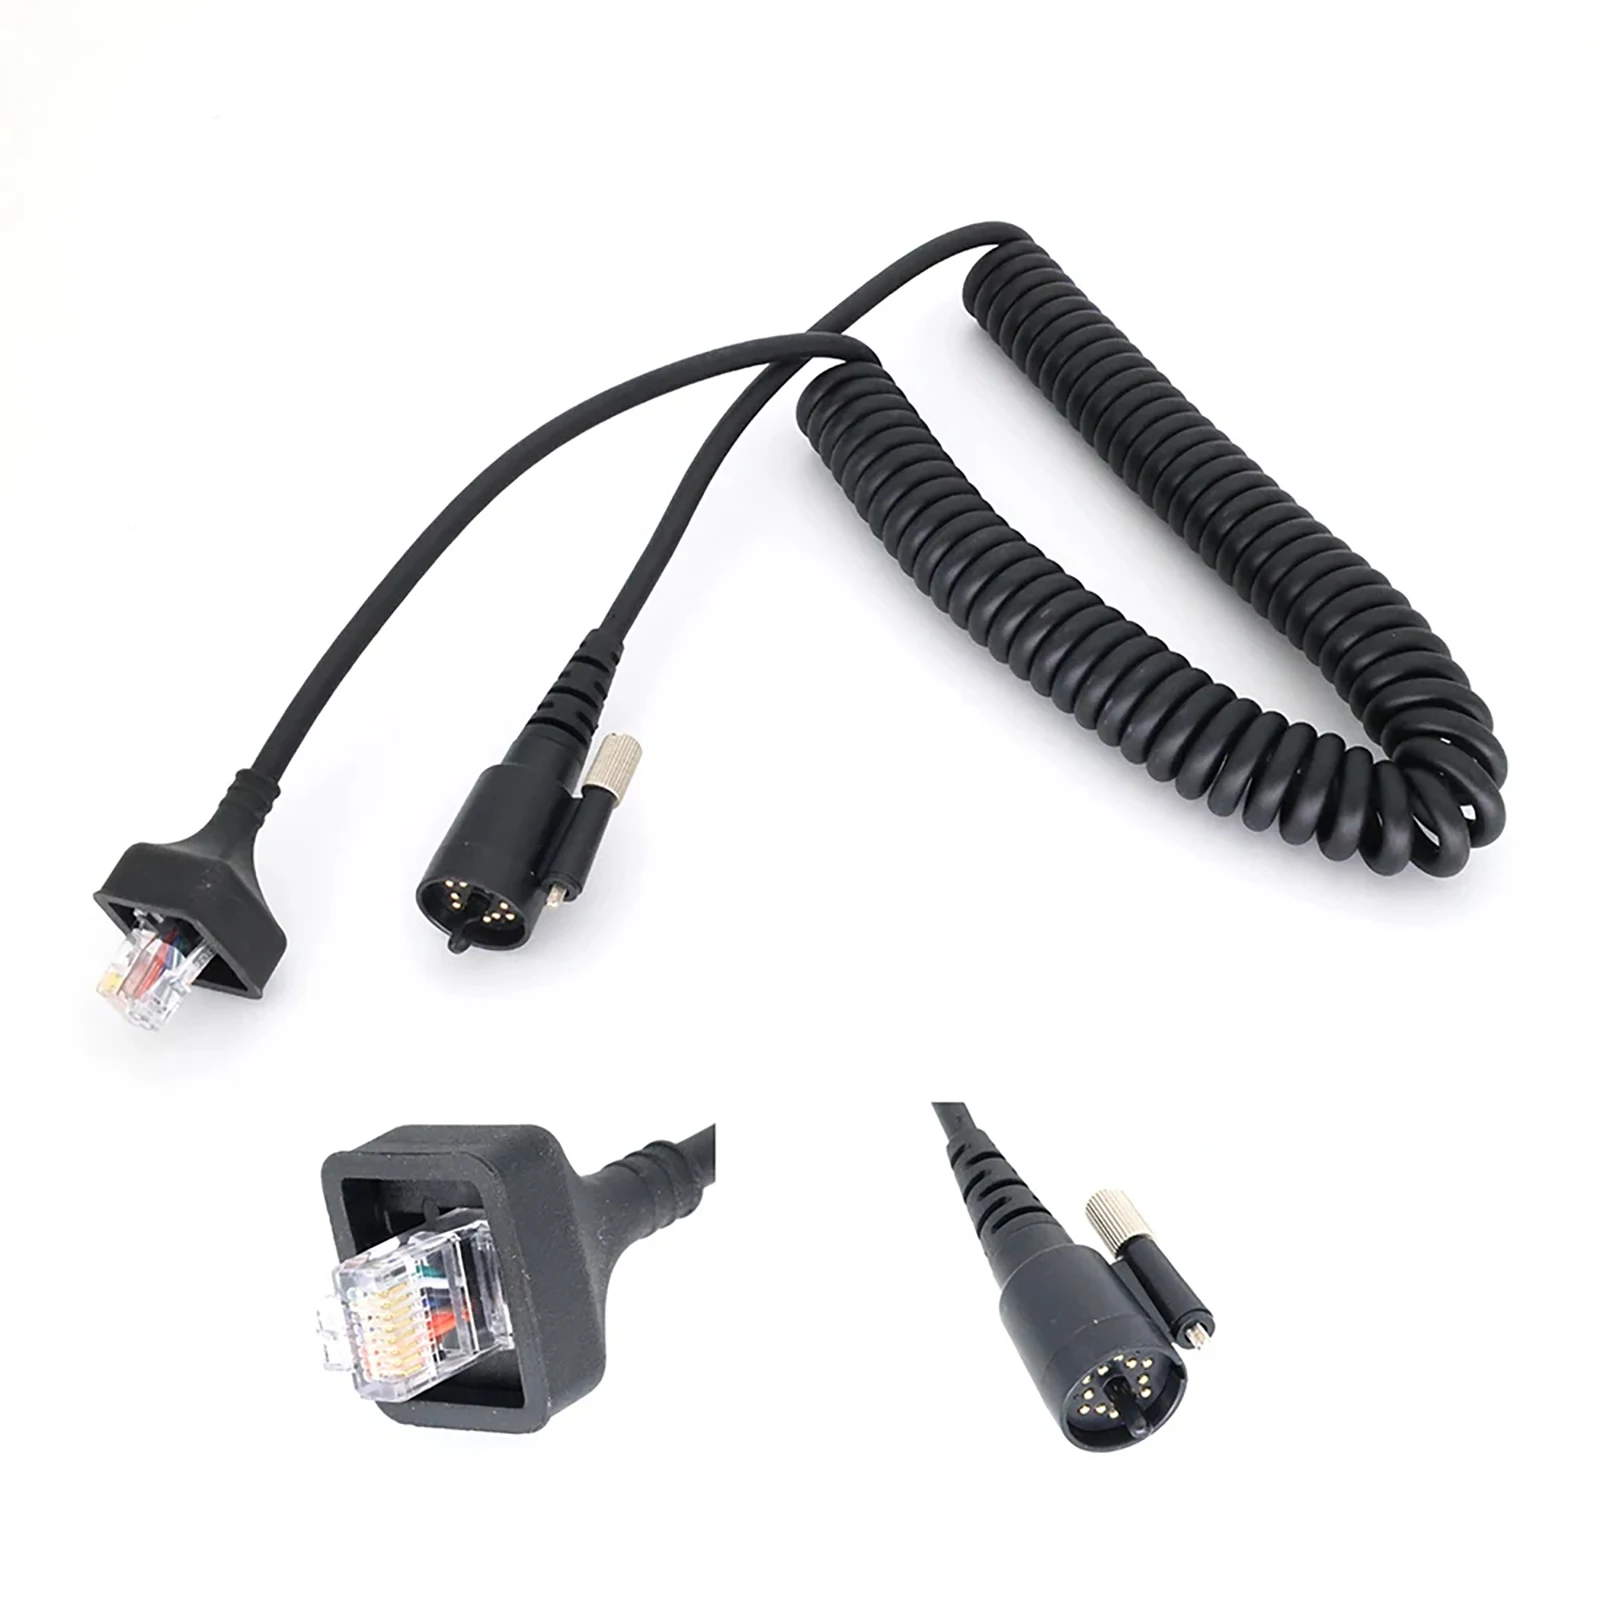 

1Pc Handheld Speaker Microphone DIY Stretchable Cable For Kenwood KMC-27 TK-690 TK-790 TK-890 TK-5710 TK-5810 Radios Accessories